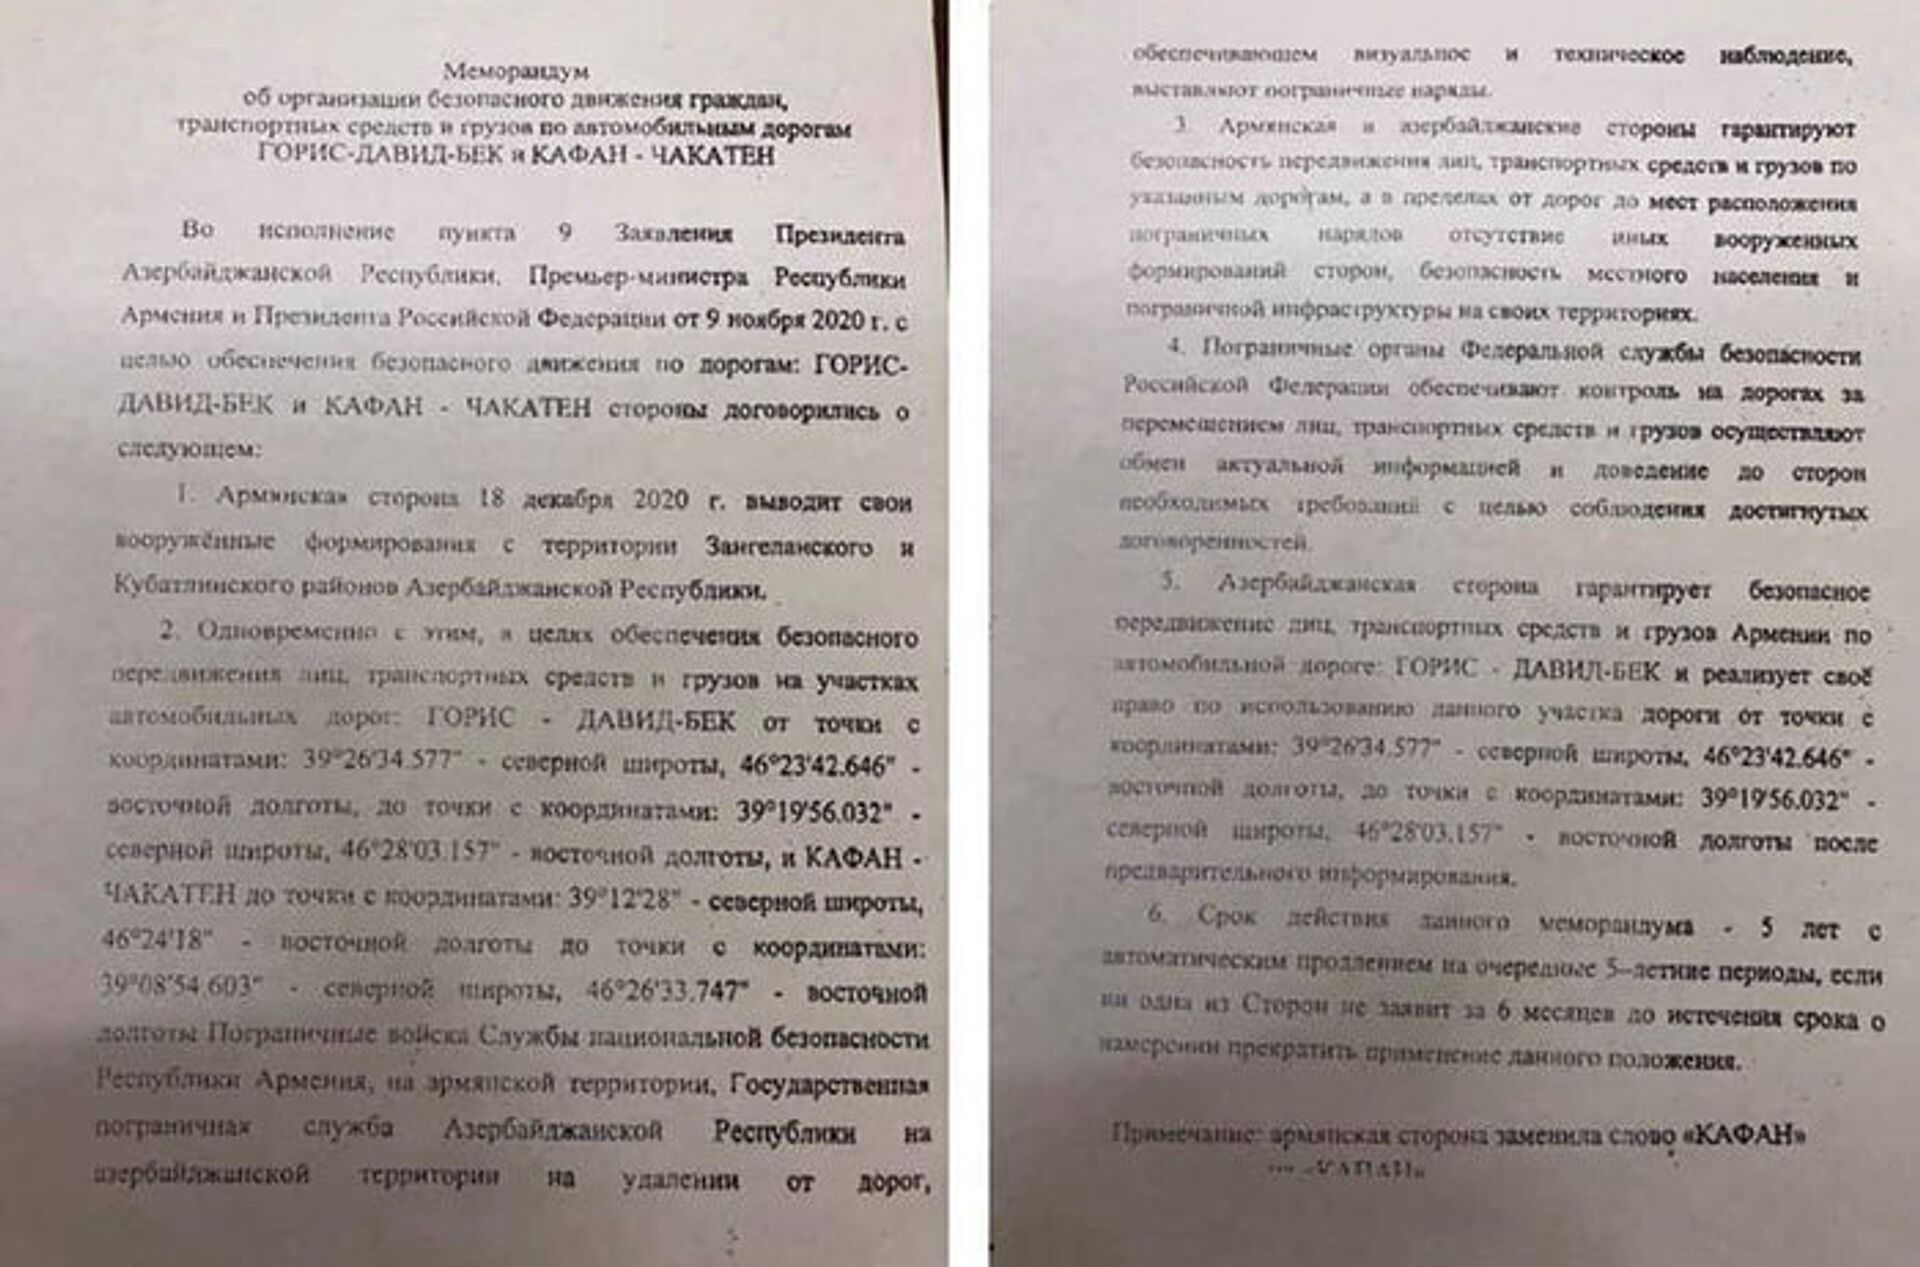 ՀՀ իշխանությունը չի բացահայտում Ադրբեջանի հետ «գաղտնի» պայմանավորվածության տեքստը - Sputnik Արմենիա, 1920, 23.03.2021